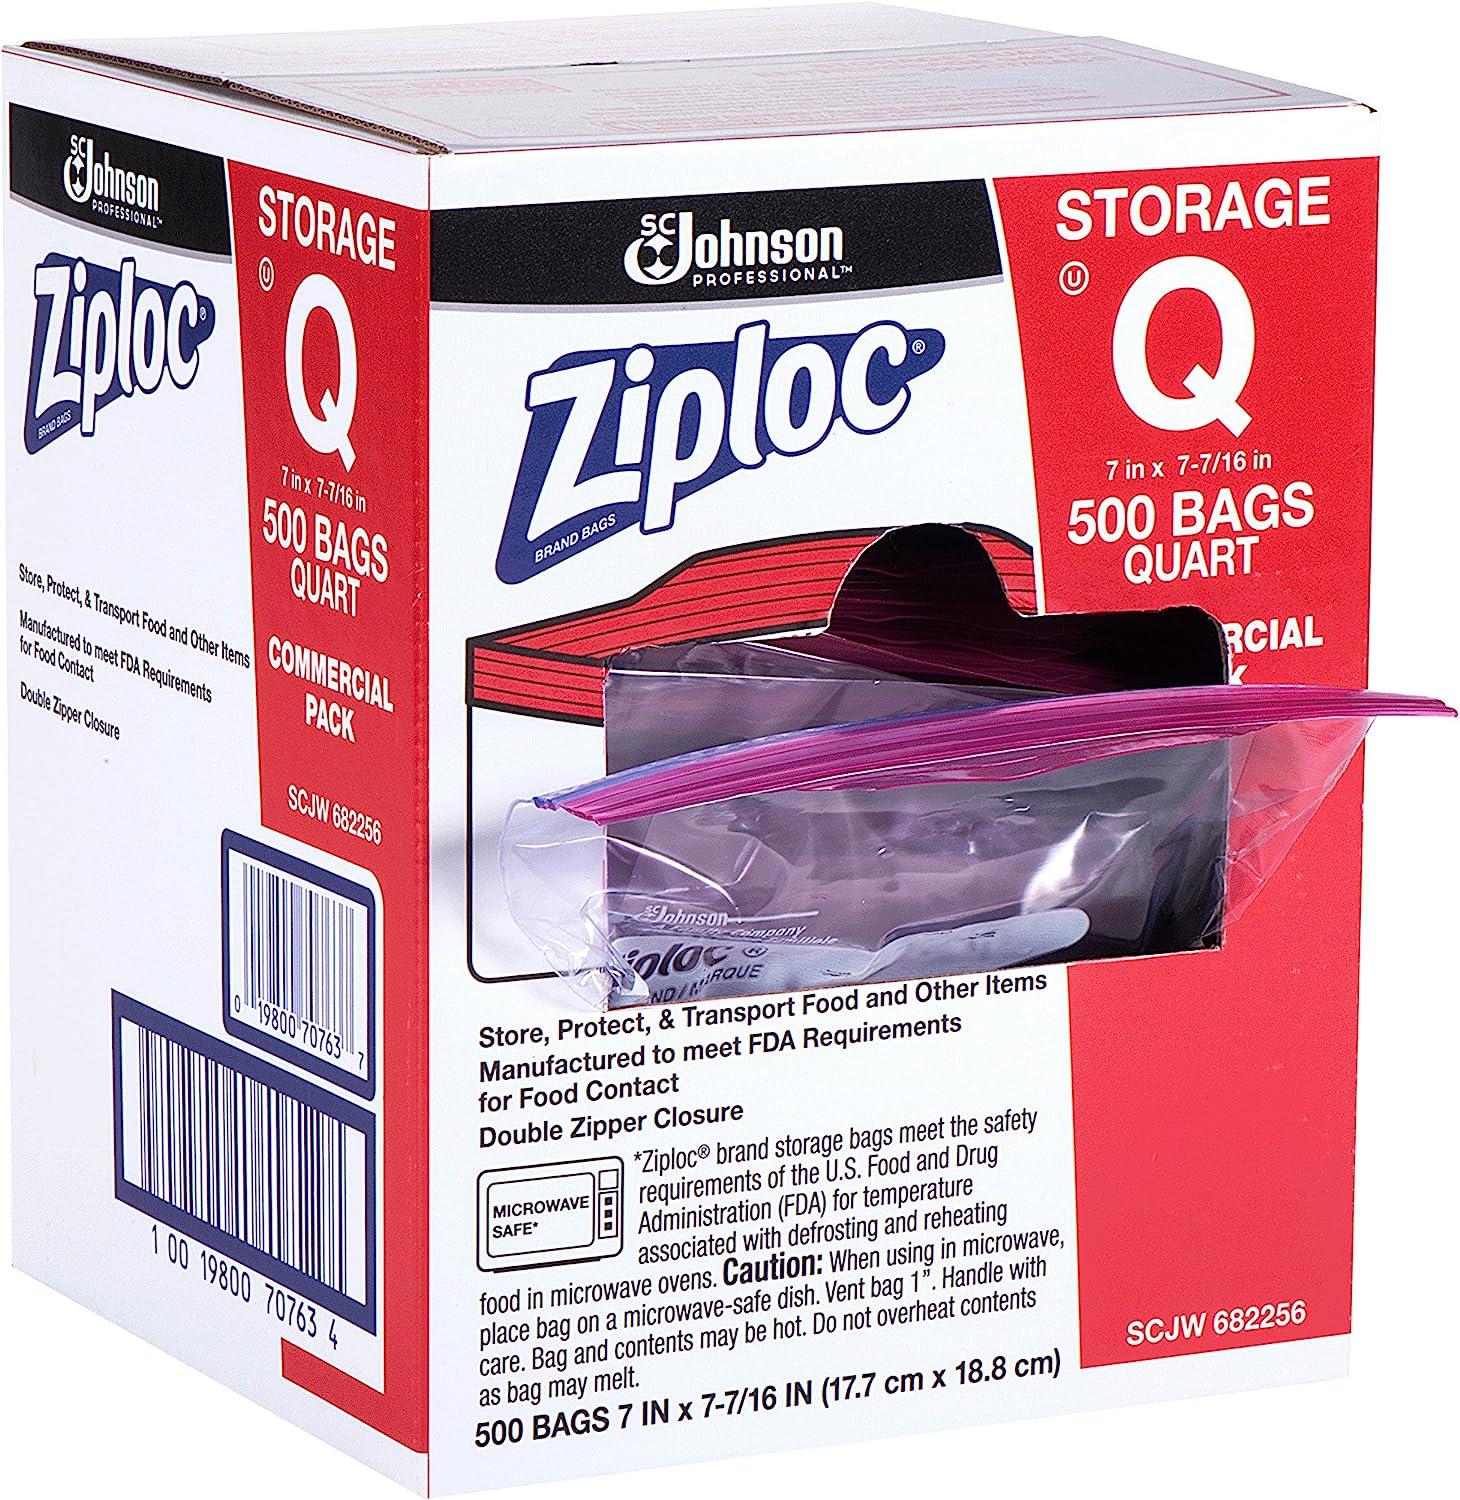 Ziploc Quart Food Storage Bags Grip 'n Seal Technology for Easier